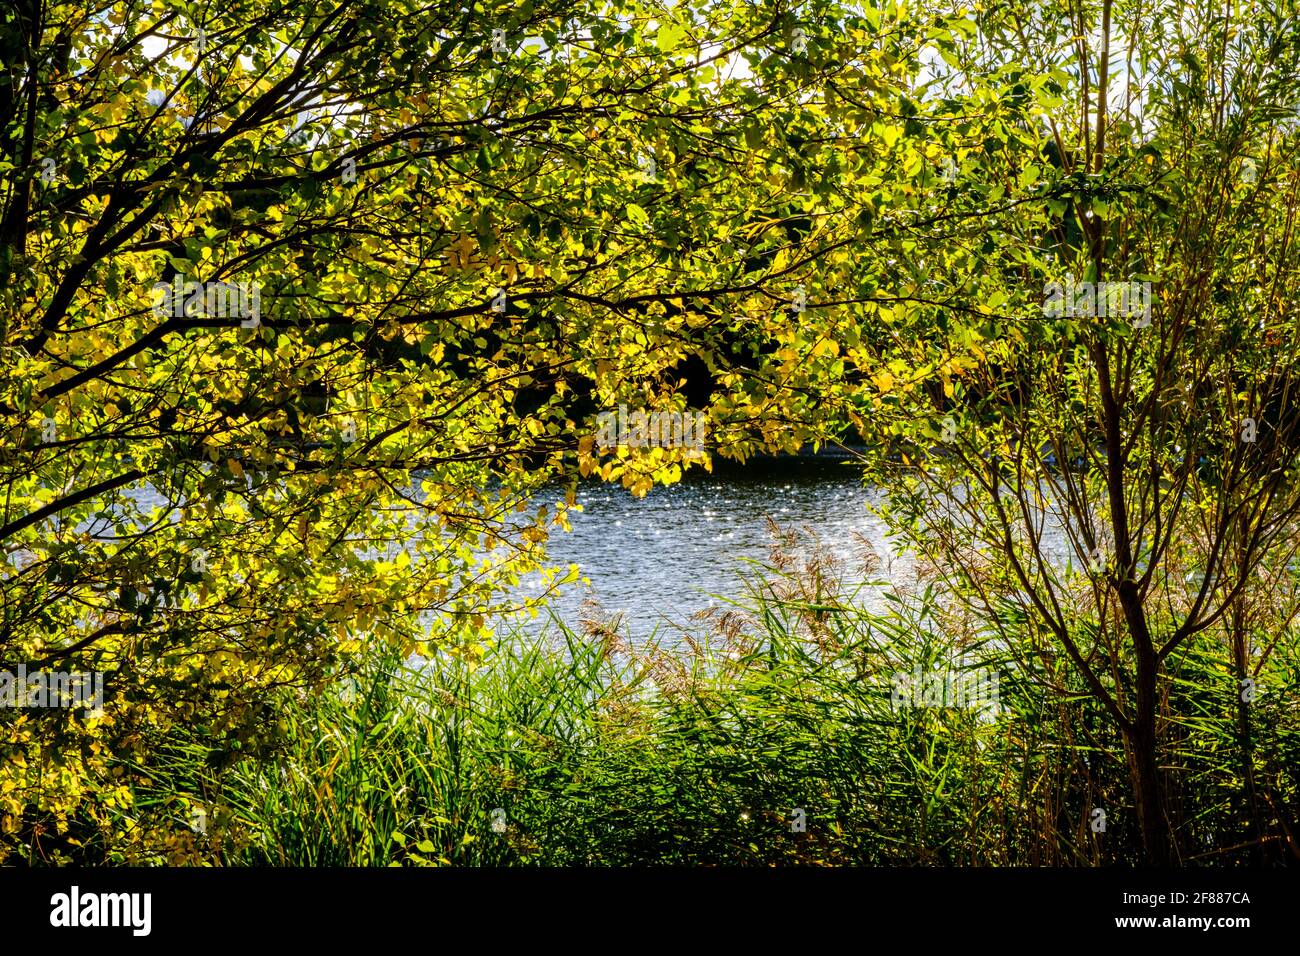 La luz del sol del otoño brilla a través de los árboles junto al agua, Rushcliffe Country Park, Ruddington, Nottinghamshire, Inglaterra, REINO UNIDO Foto de stock